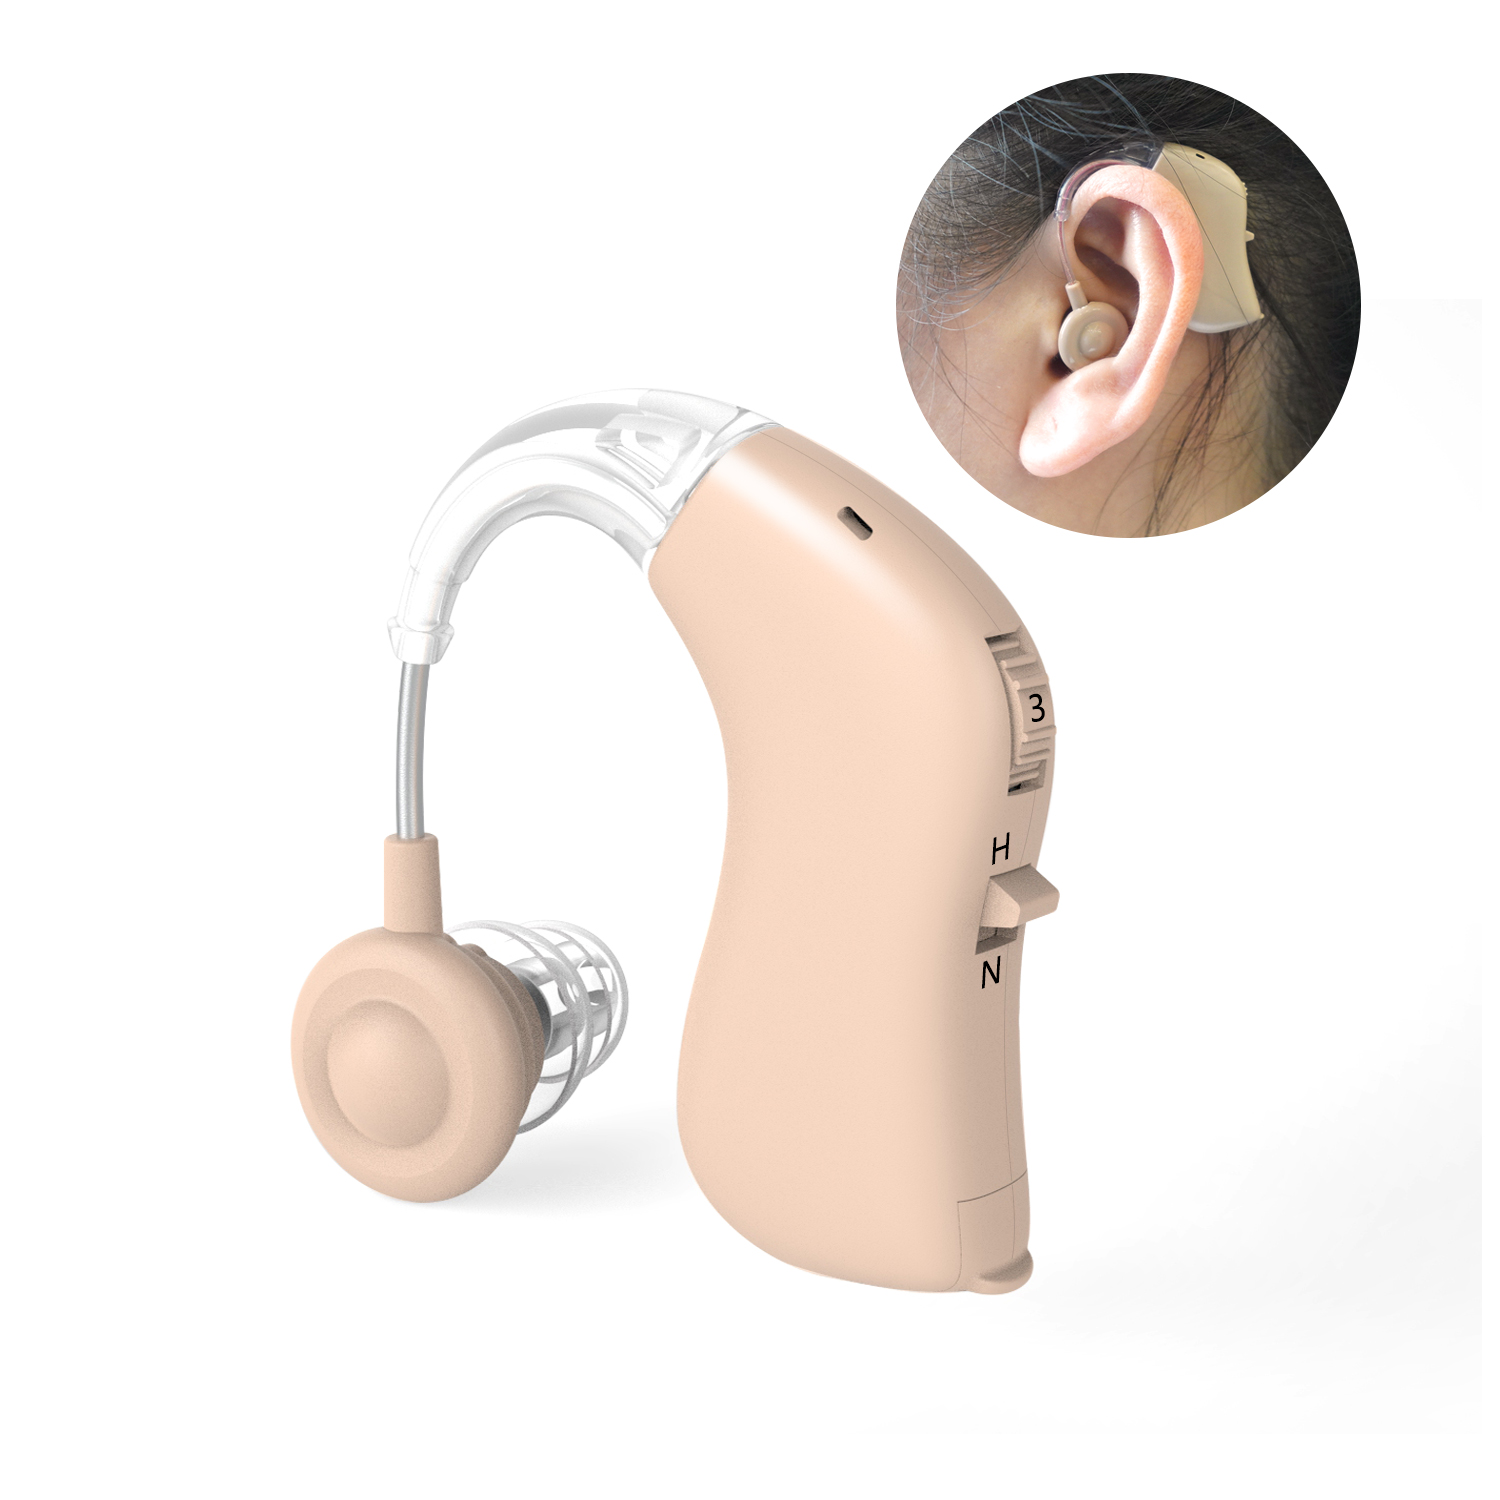 G28 hearing aid2